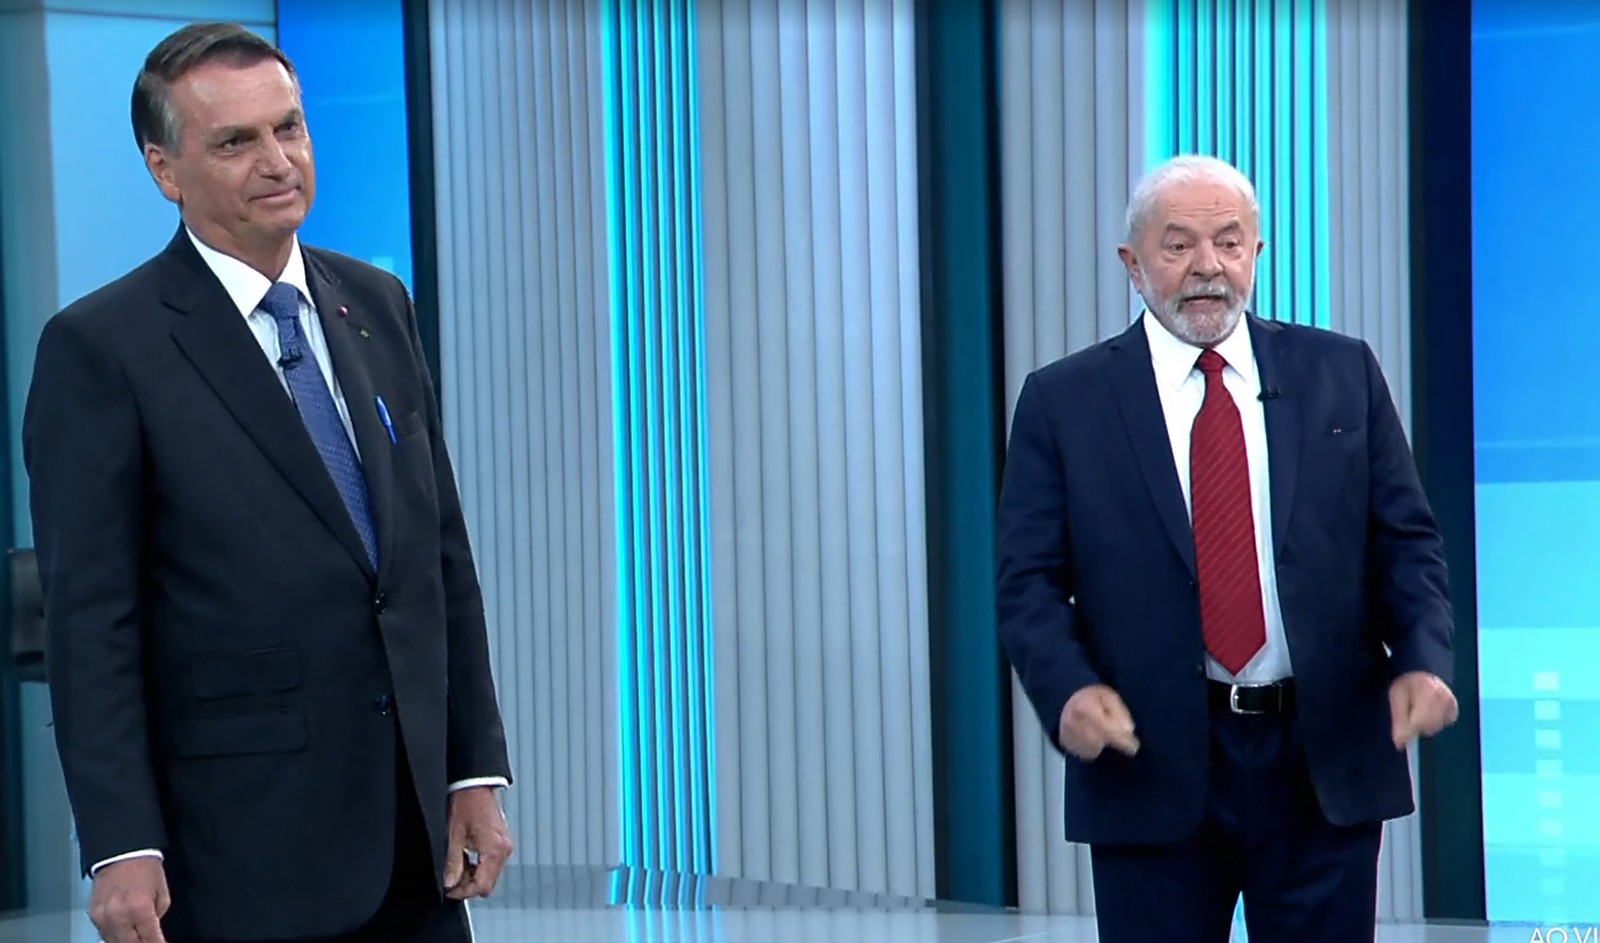 Debate presidencial na TV Globo. Bolsonaro e Lula se enfrentam antes da eleição no domingo. — Foto: Reprodução